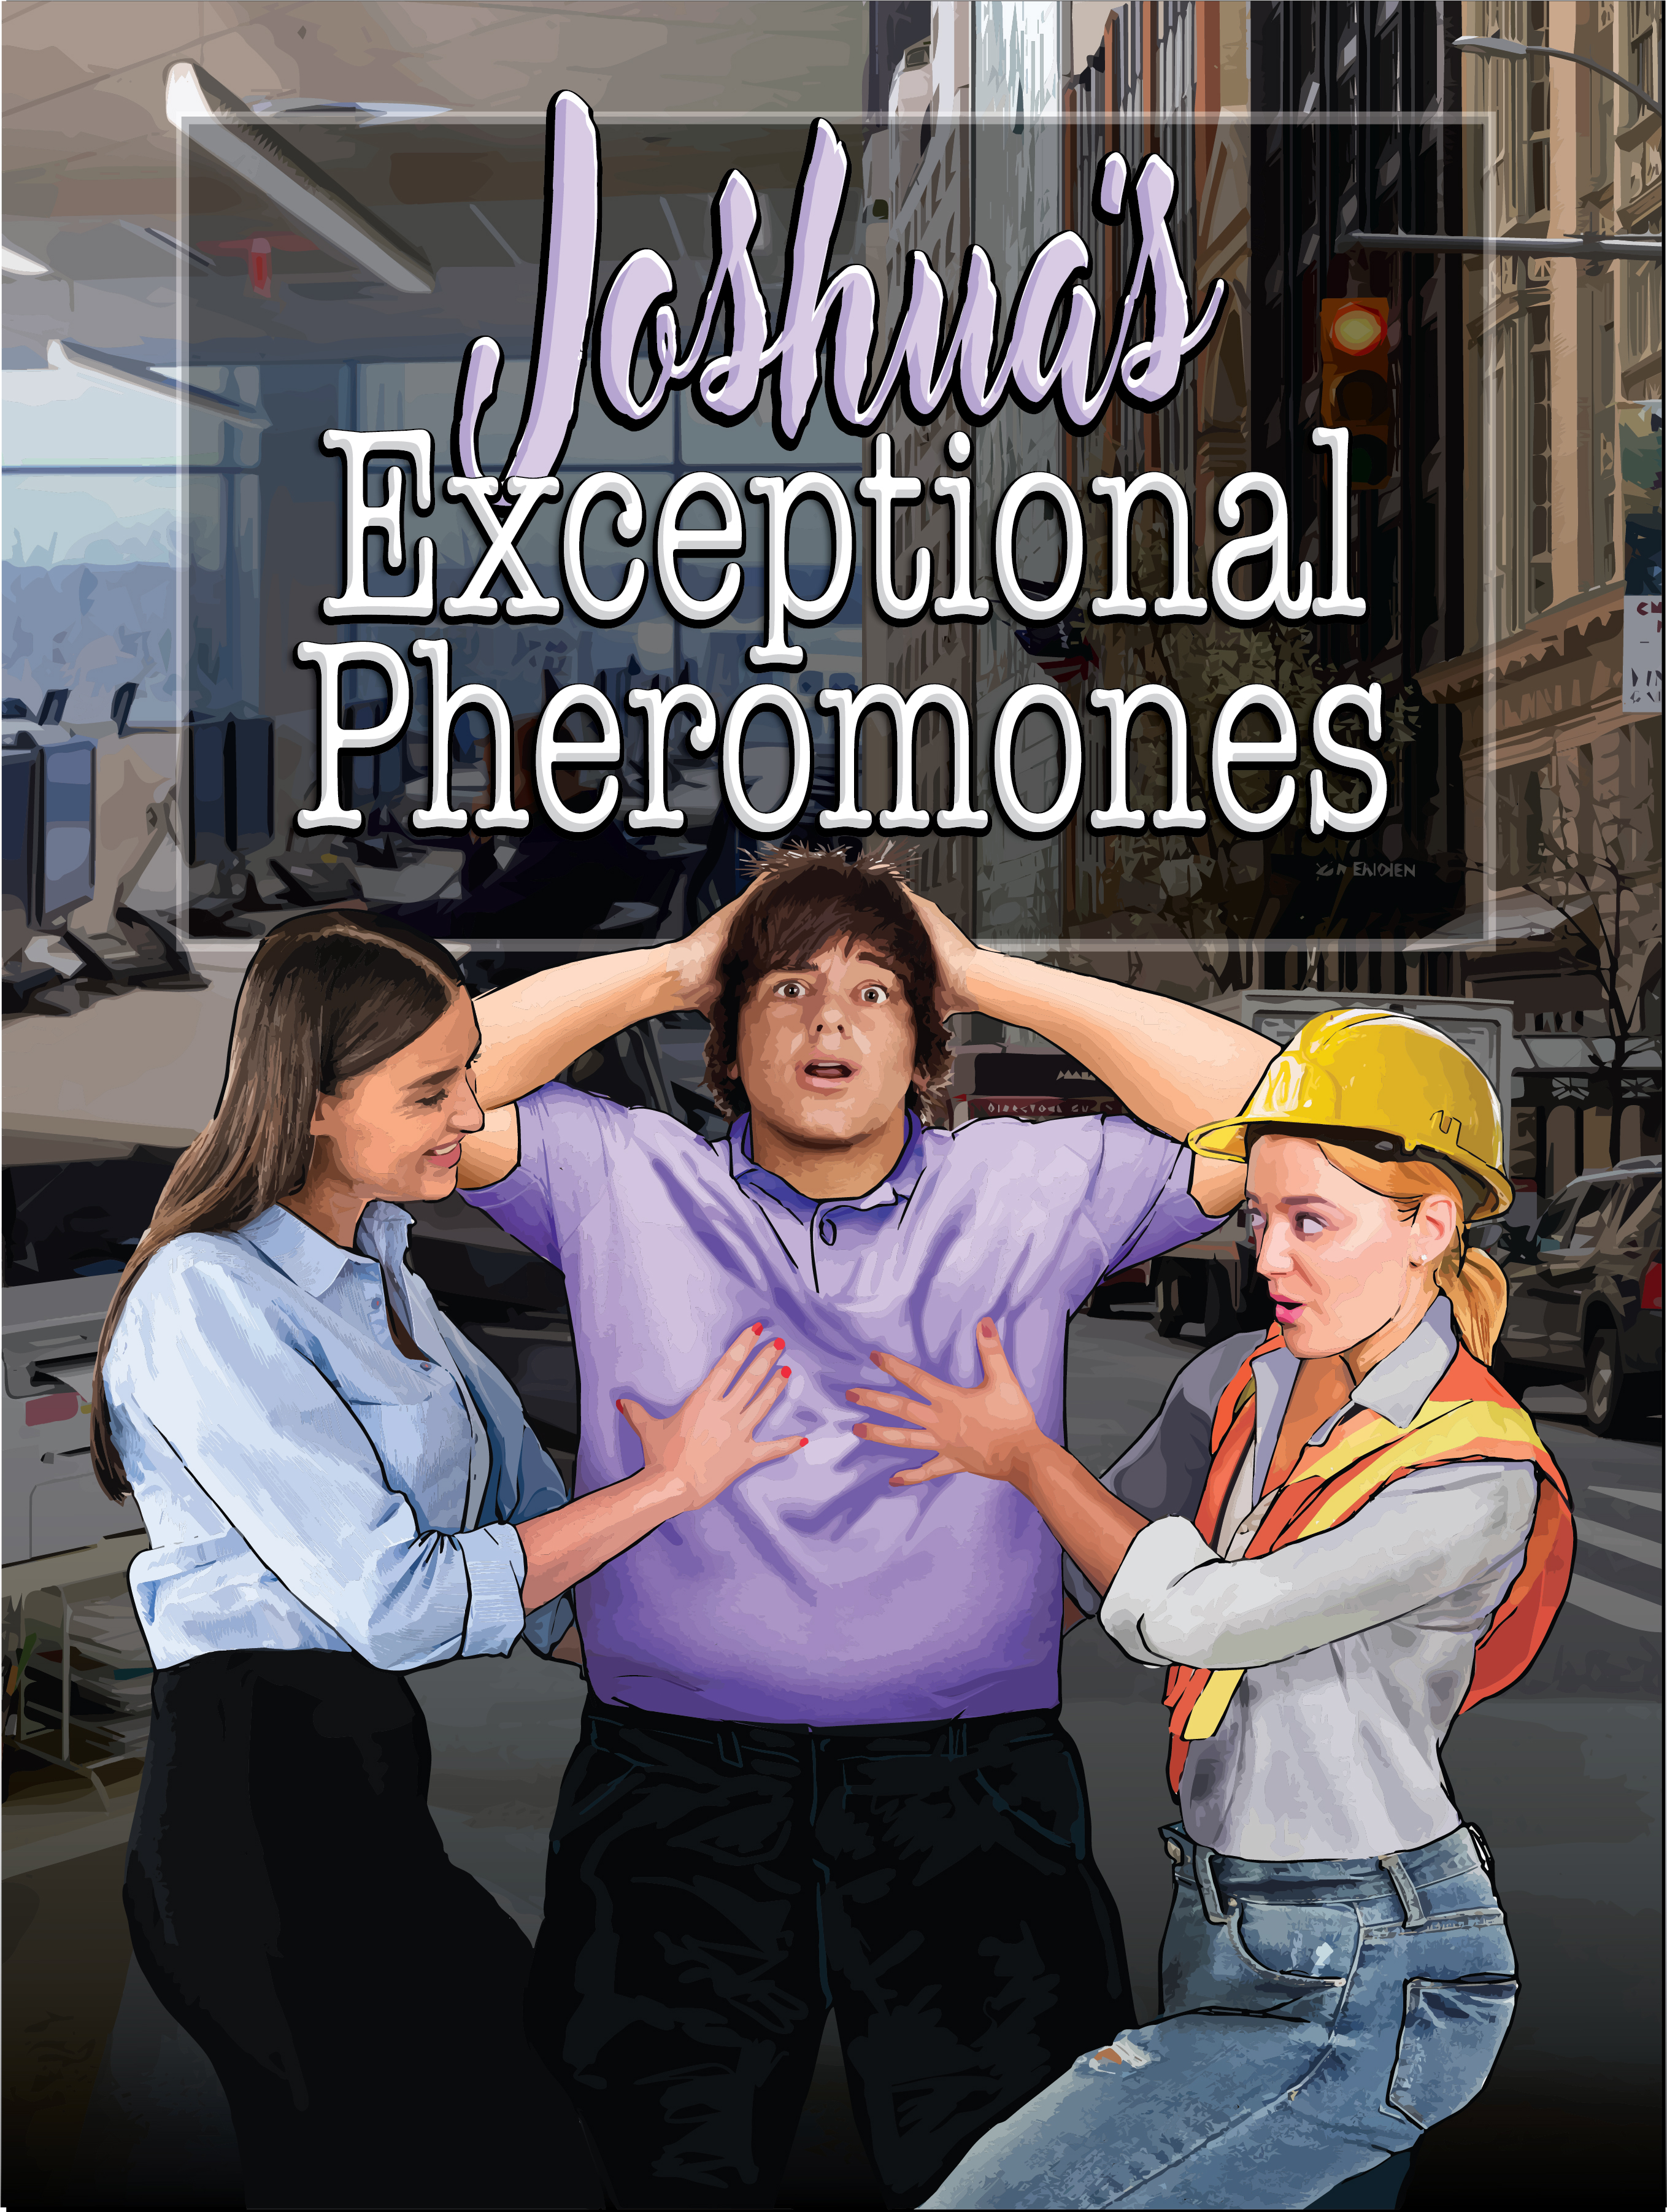 Joshua's Exceptional Pheromones